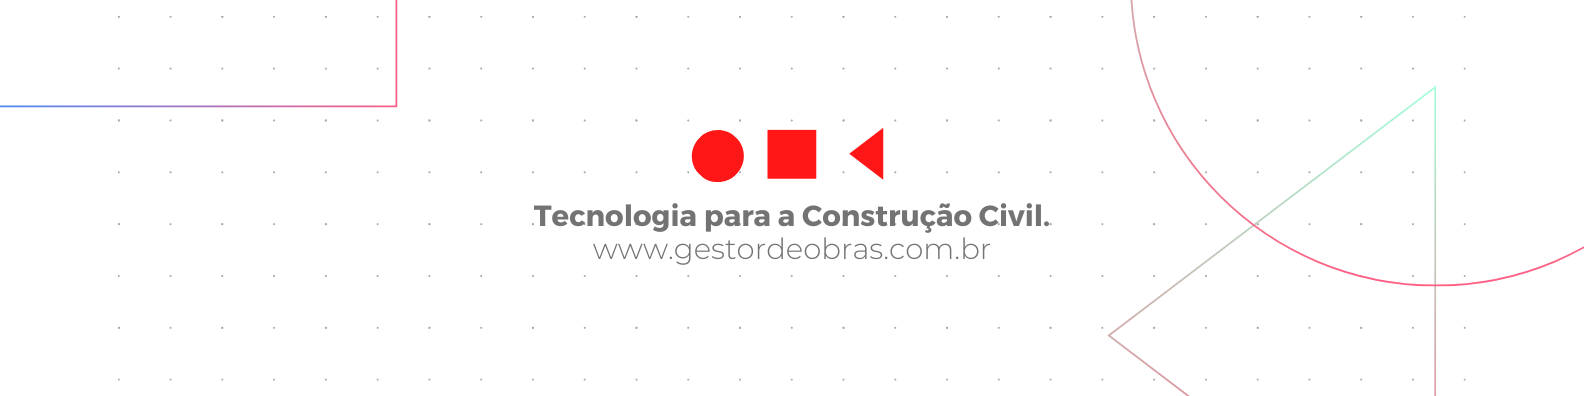 Tecnologia para a Construção Civil.. www.gestordeobras.com.br (1)